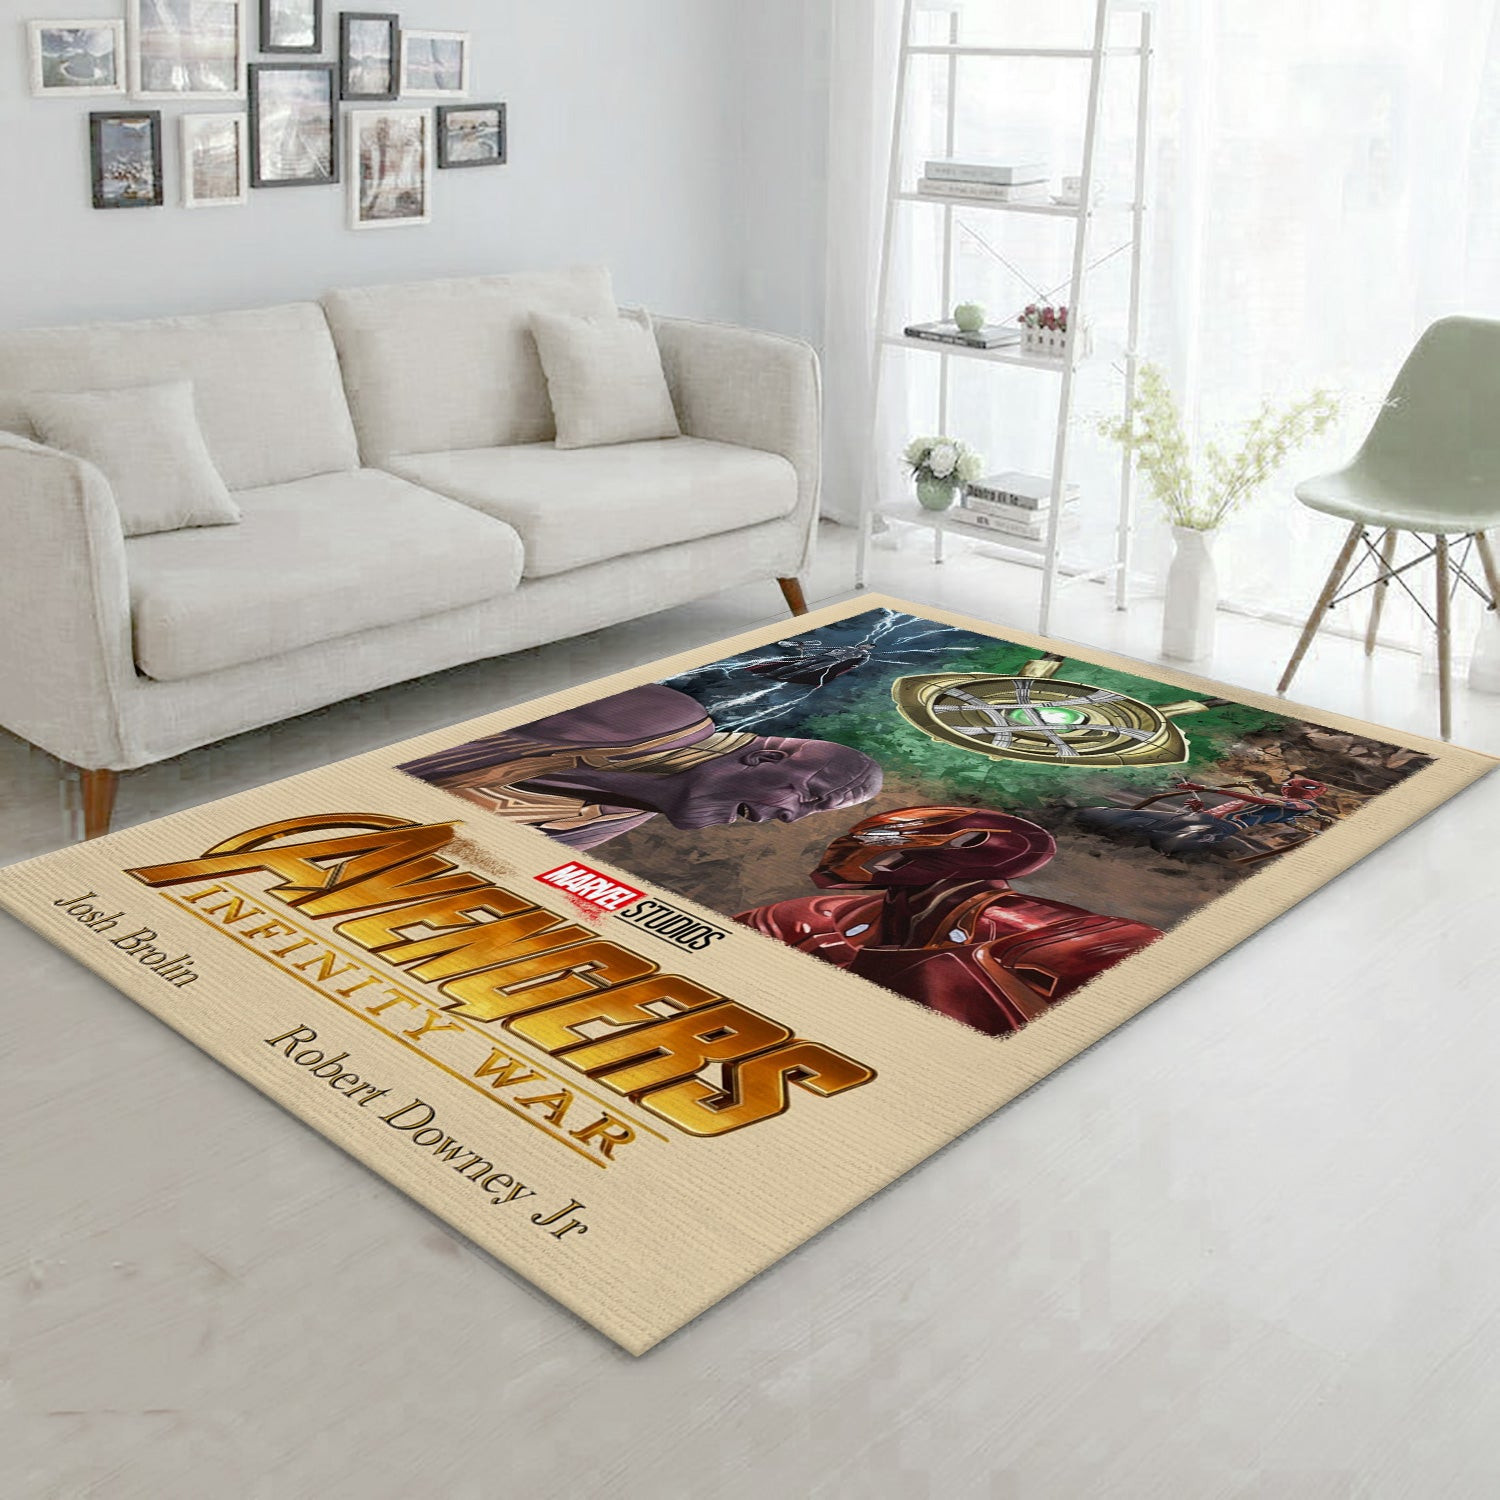 Avengers Infinity War Area Rug, Living Room Rug - Floor Decor - Indoor Outdoor Rugs